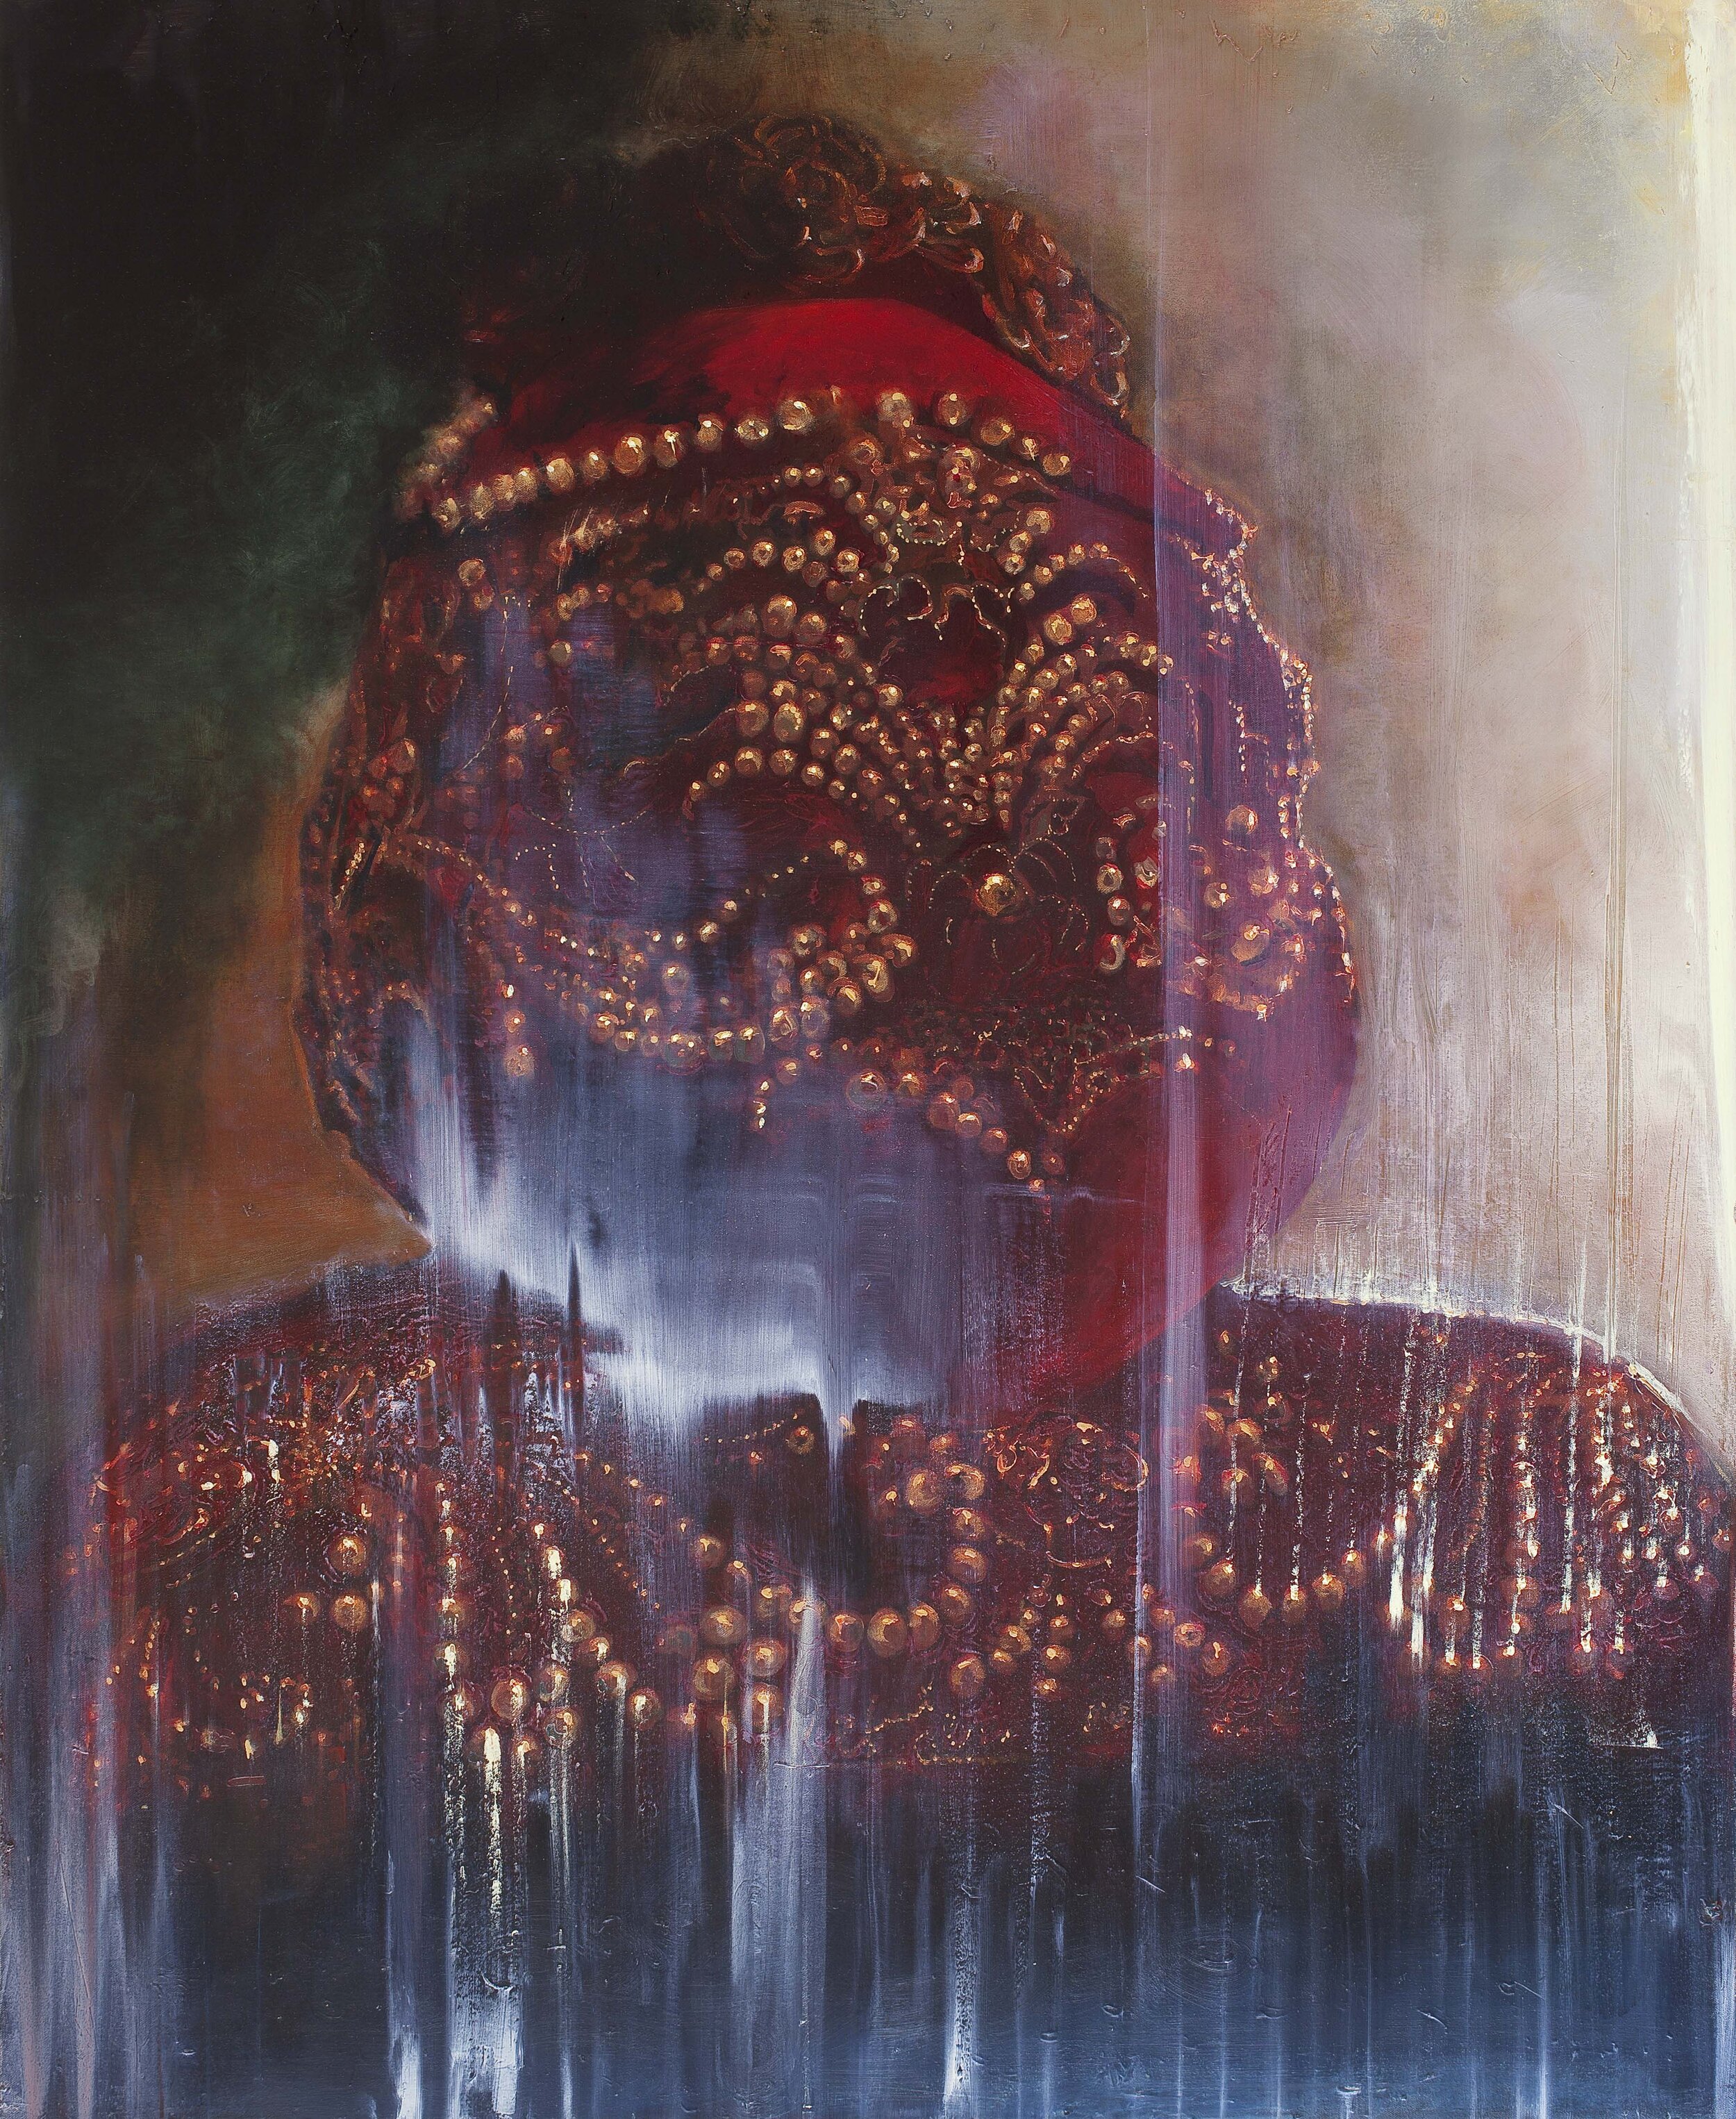 Head (2011), oil on canvas 113x91 cm